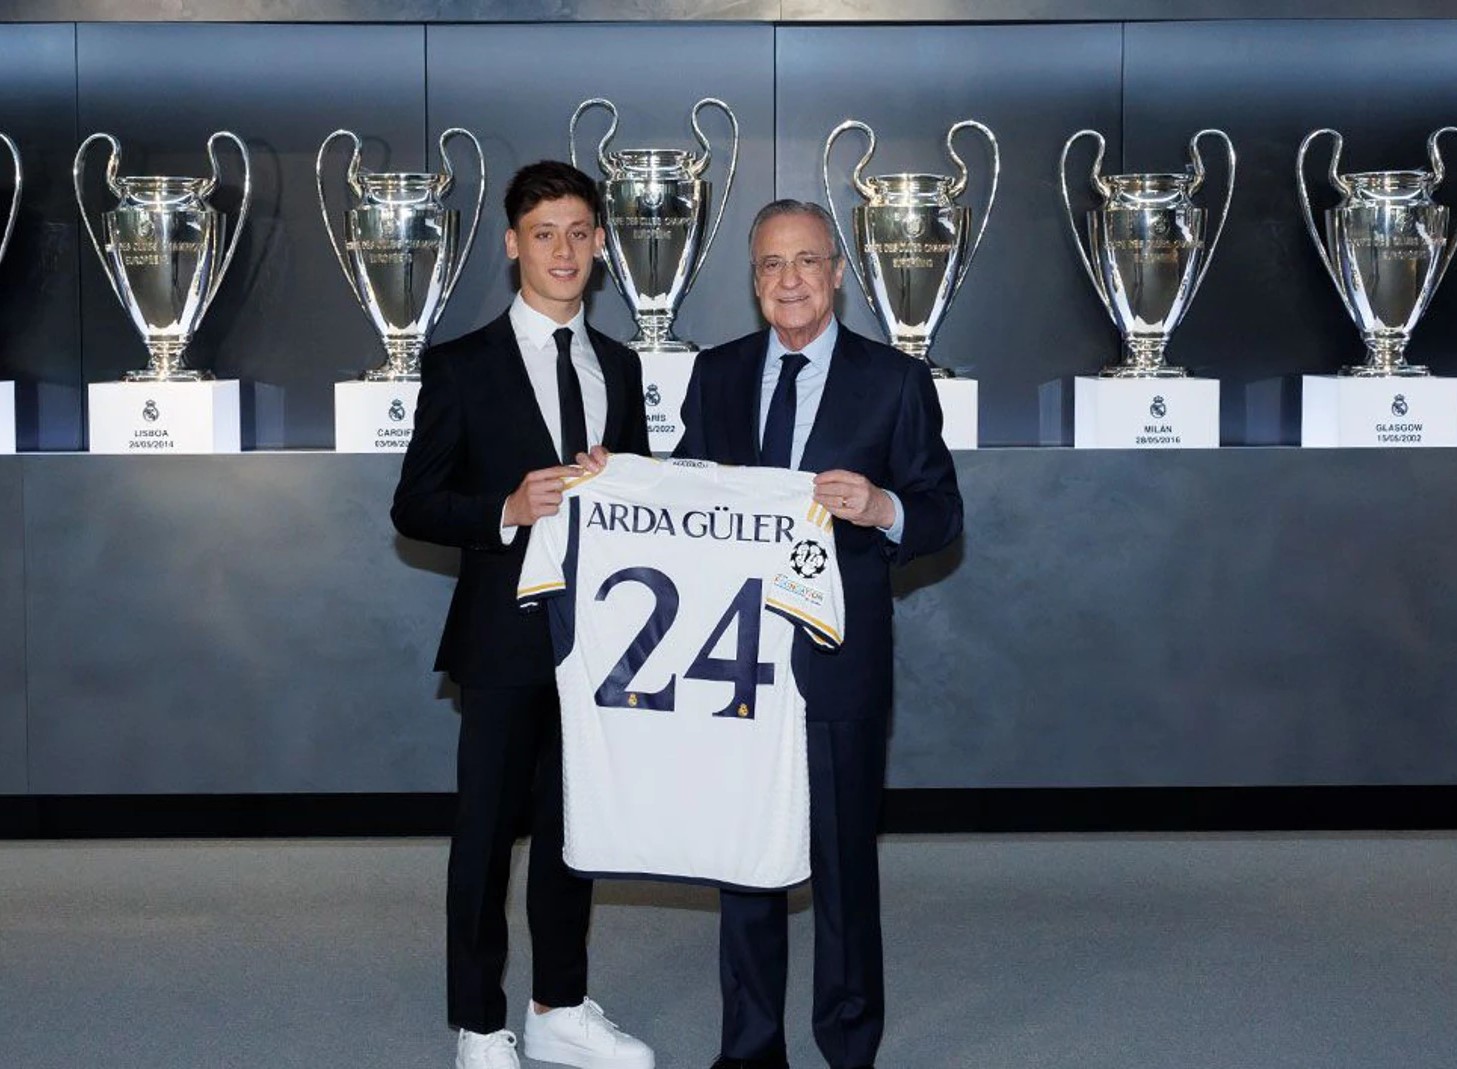 Arda Güler fue presentado como nuevo jugador del Real Madrid